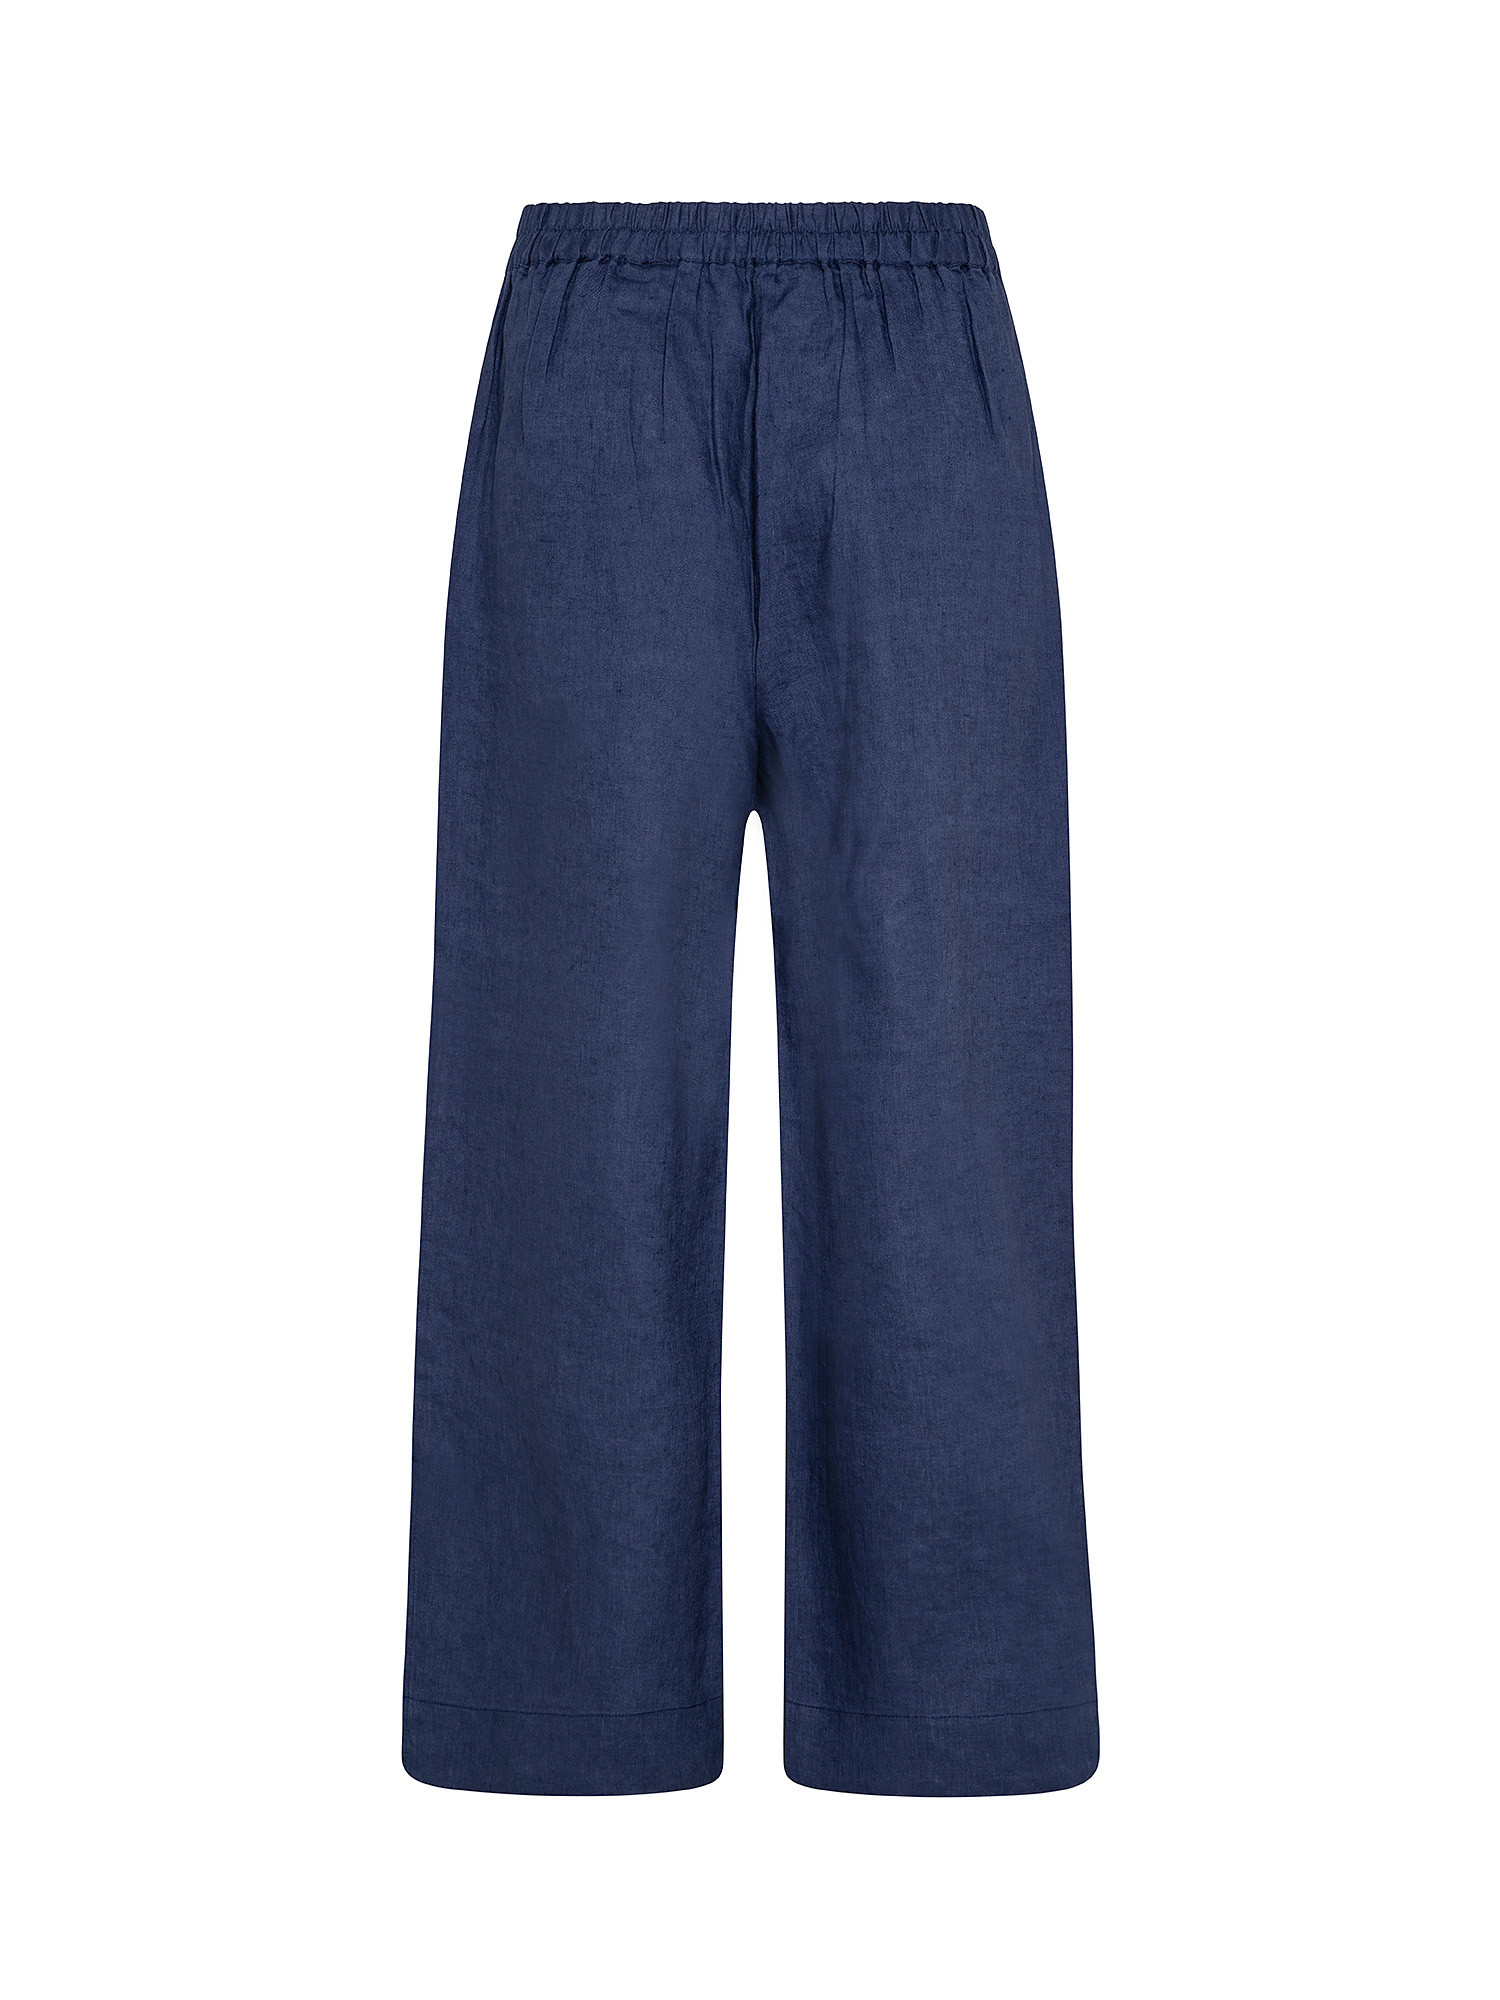 Pantaloni puro lino con spacchi, Blu, large image number 1